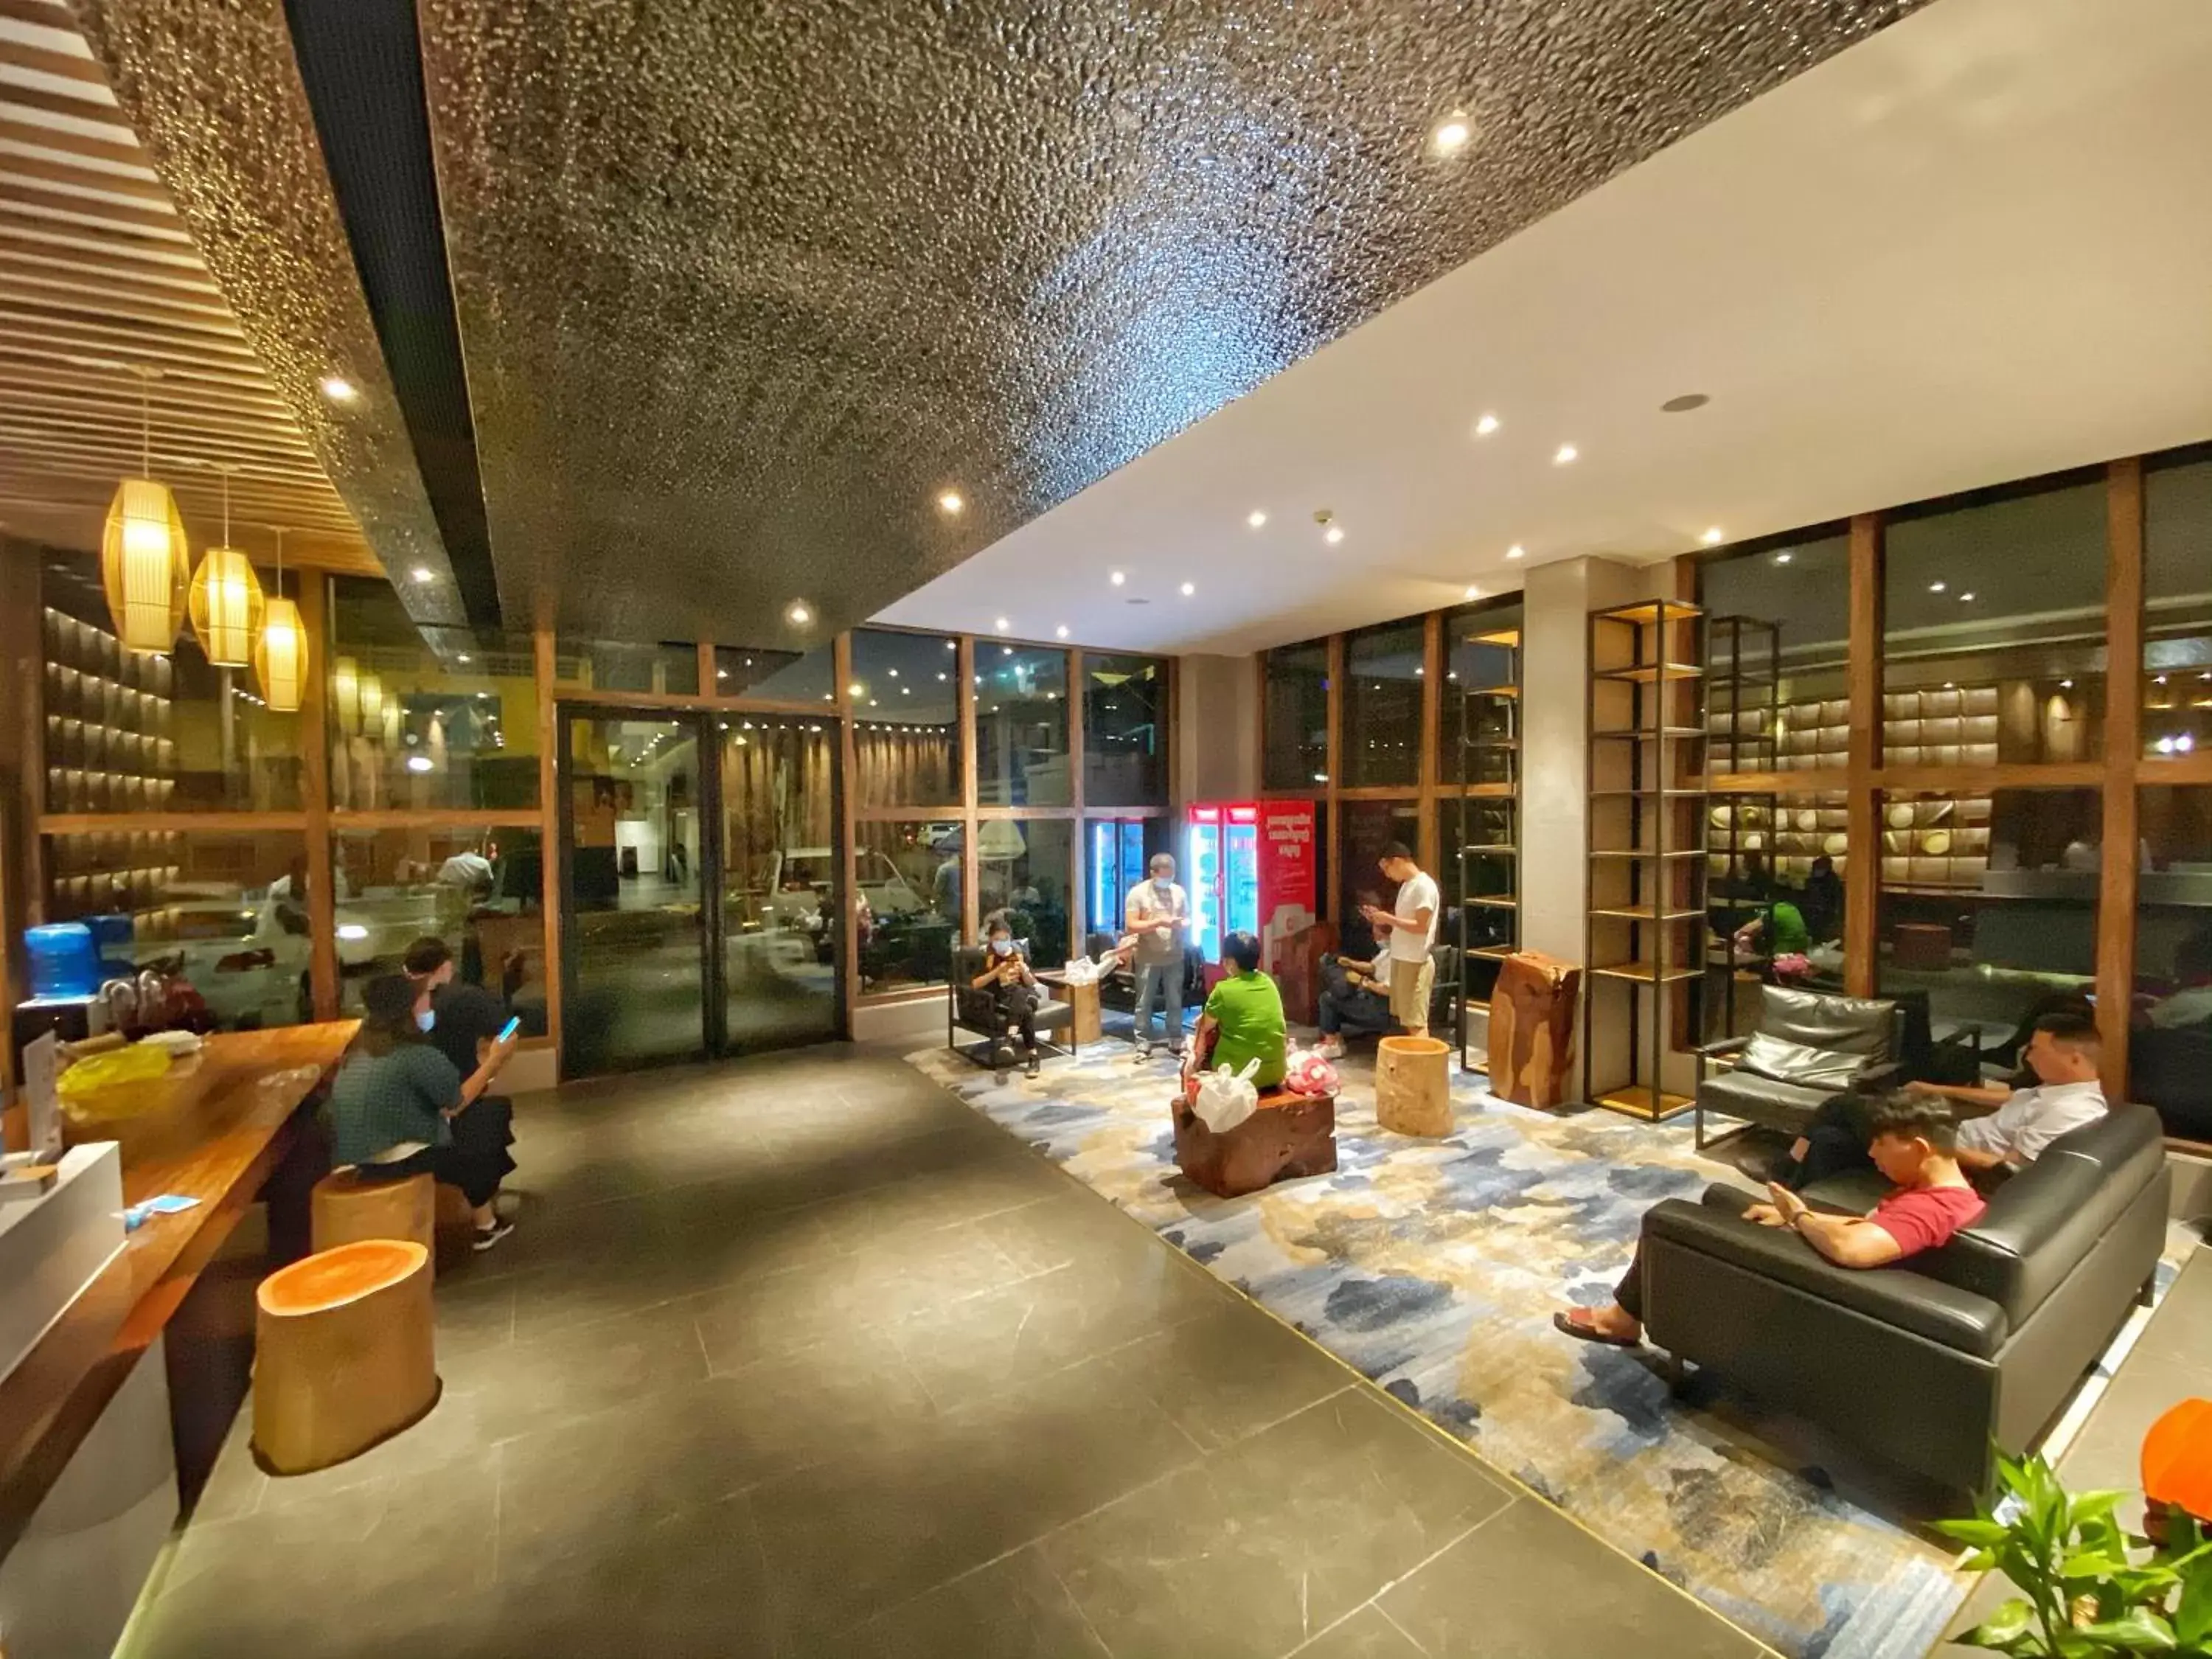 Lobby or reception in Yunfan Hotel